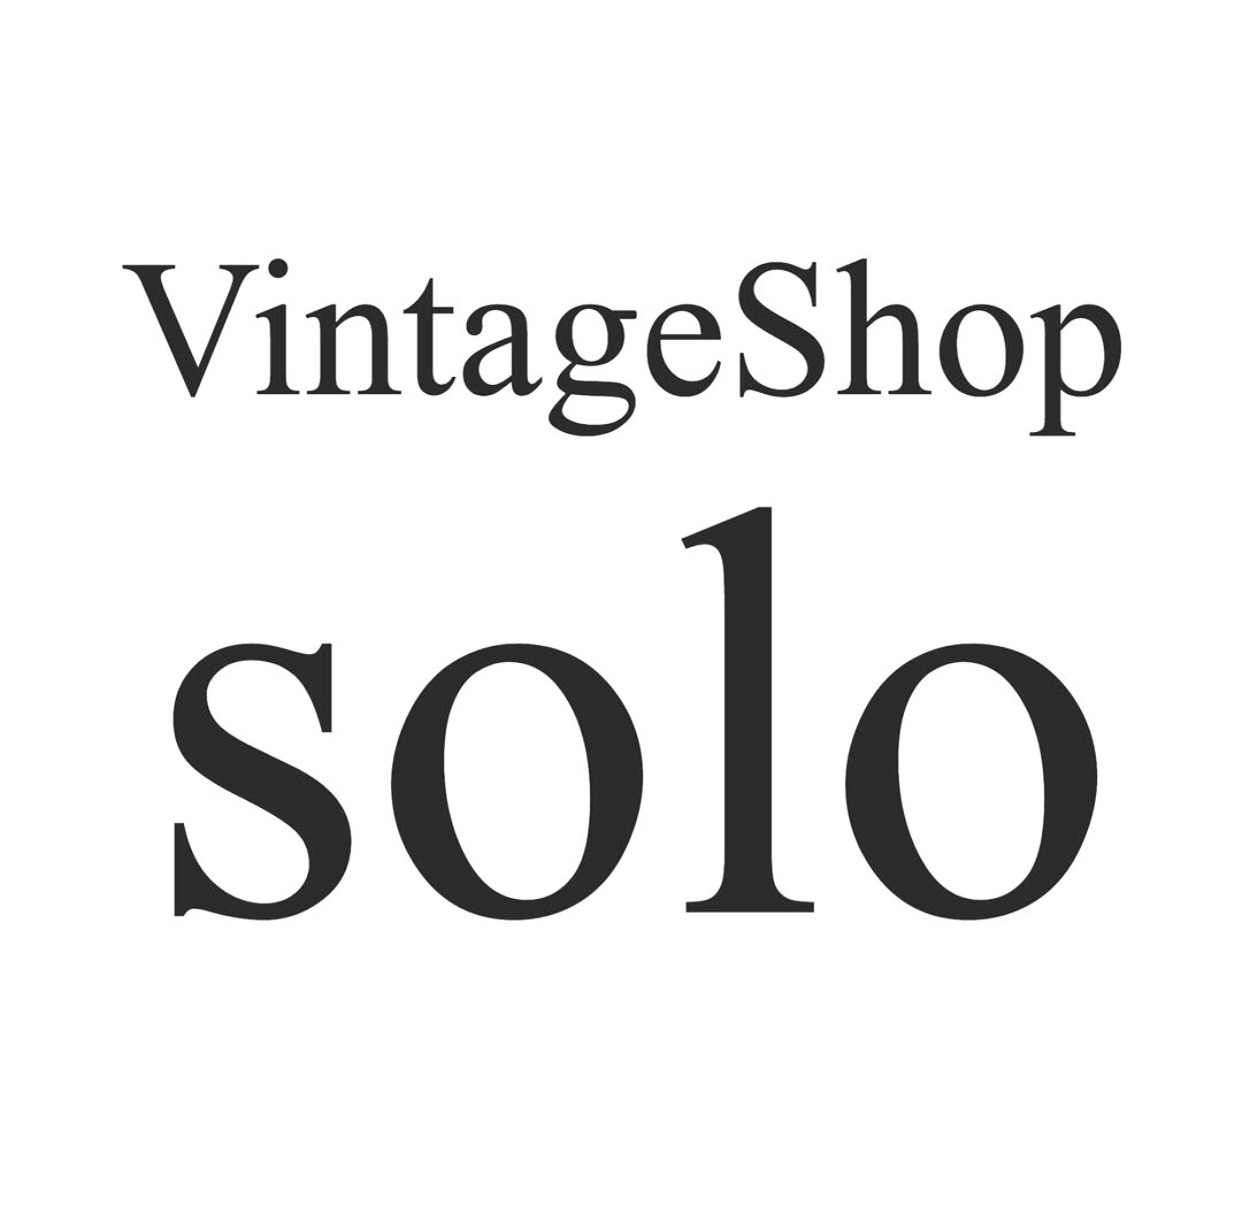 VintageShop solo